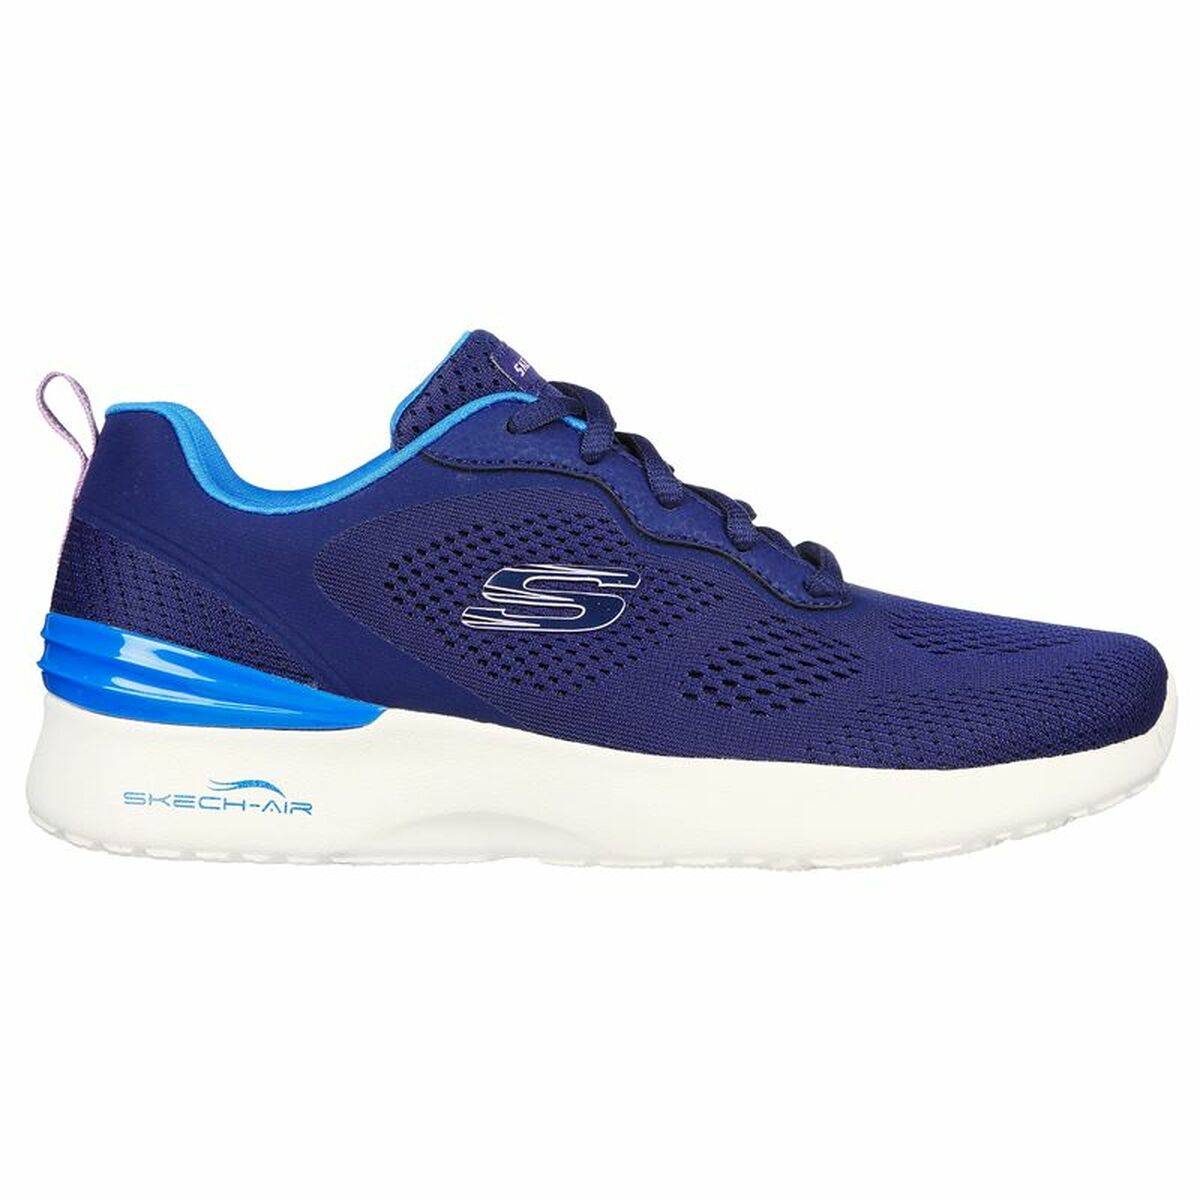 Chaussures de sport pour femme Skechers Skech-Air Dynamight - New Grind Bleu foncé